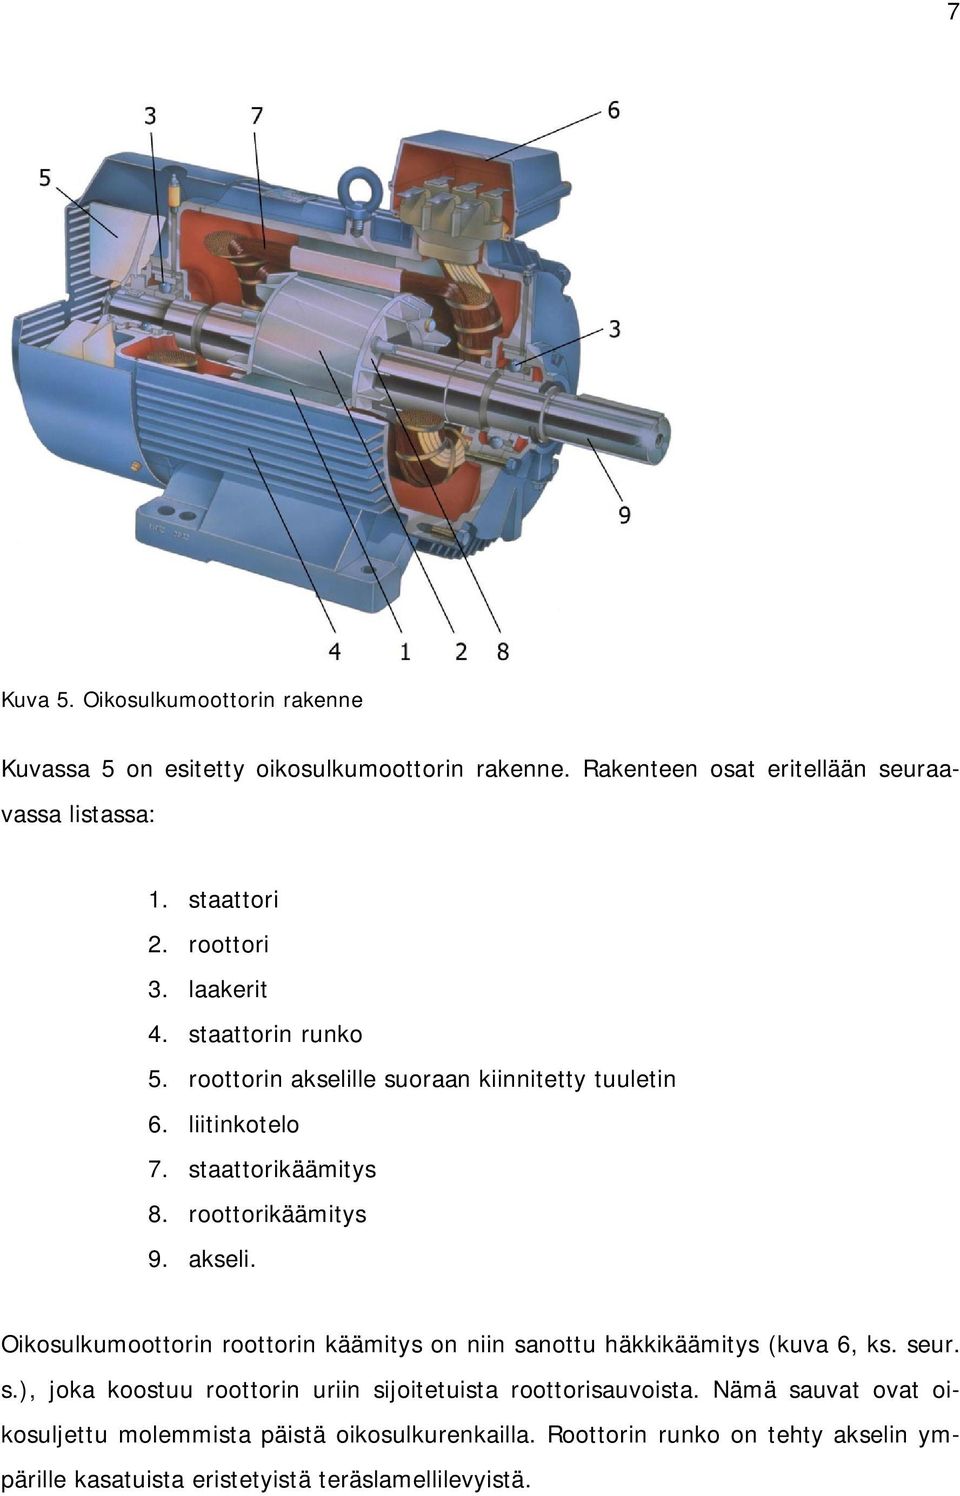 akseli. Oikosulkumoottorin roottorin käämitys on niin sanottu häkkikäämitys (kuva 6, ks. seur. s.), joka koostuu roottorin uriin sijoitetuista roottorisauvoista.